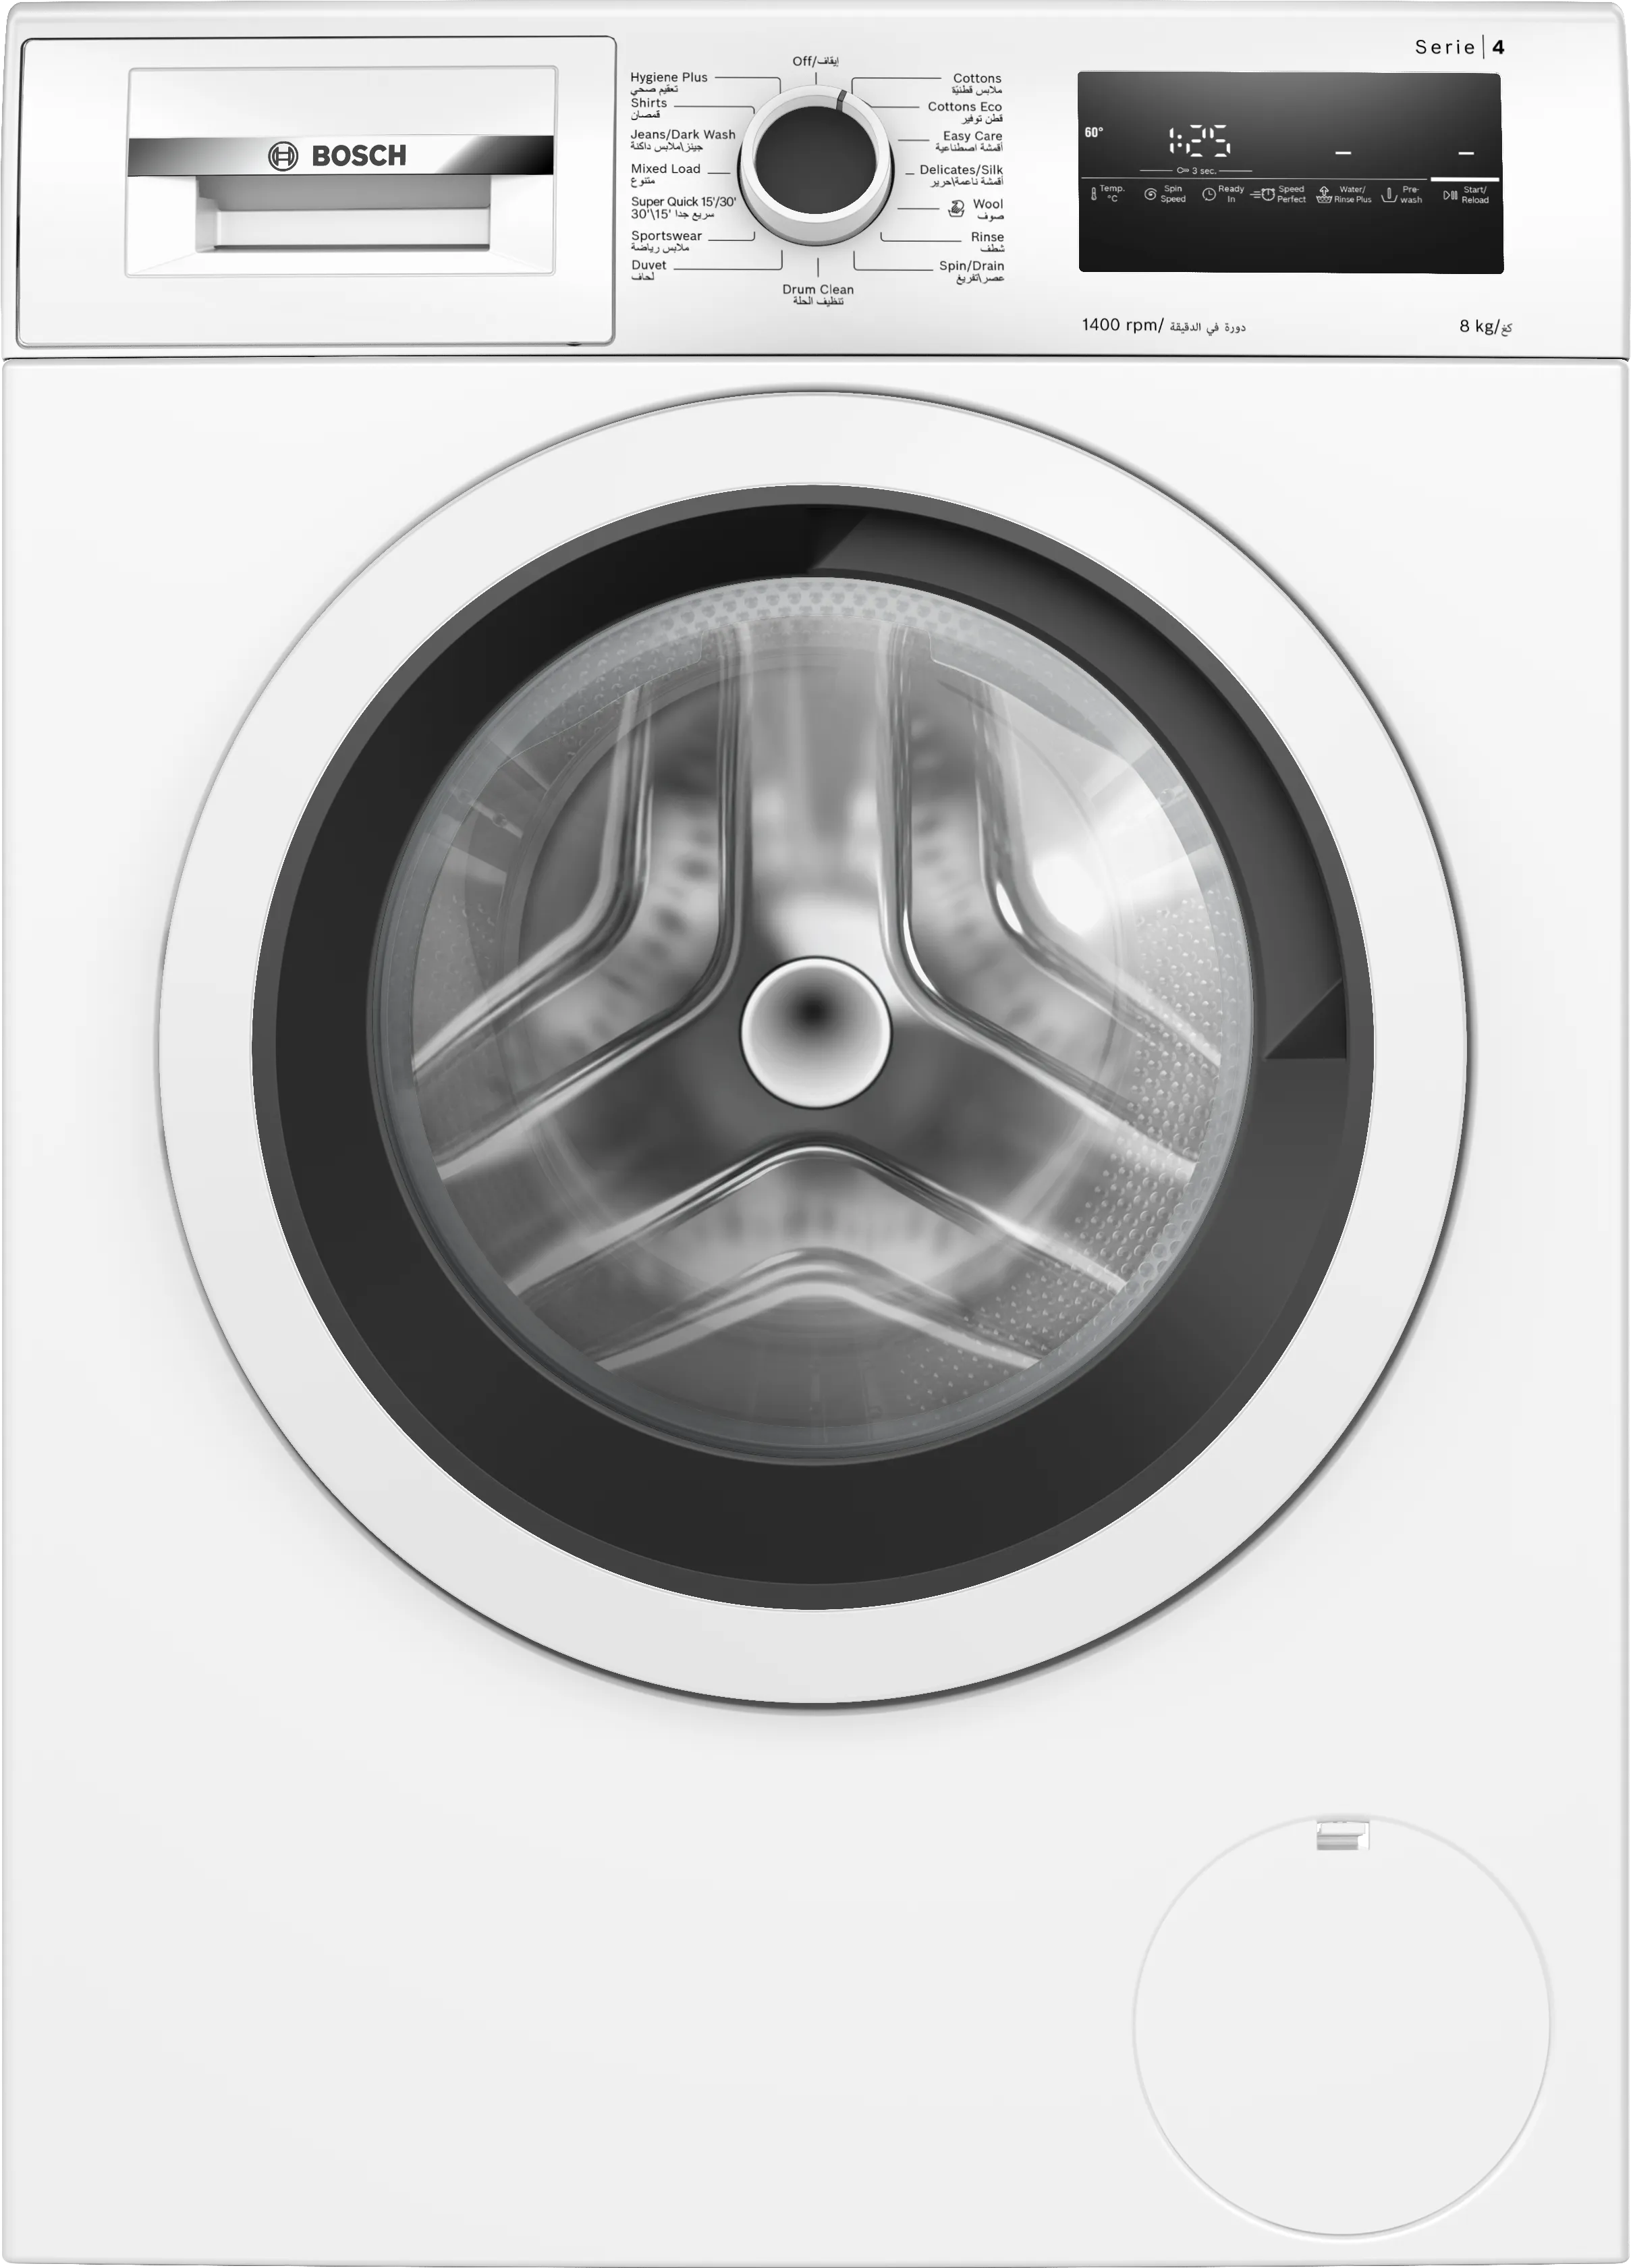 Series 4 washing machine, front loader 8 kg 1400 rpm 